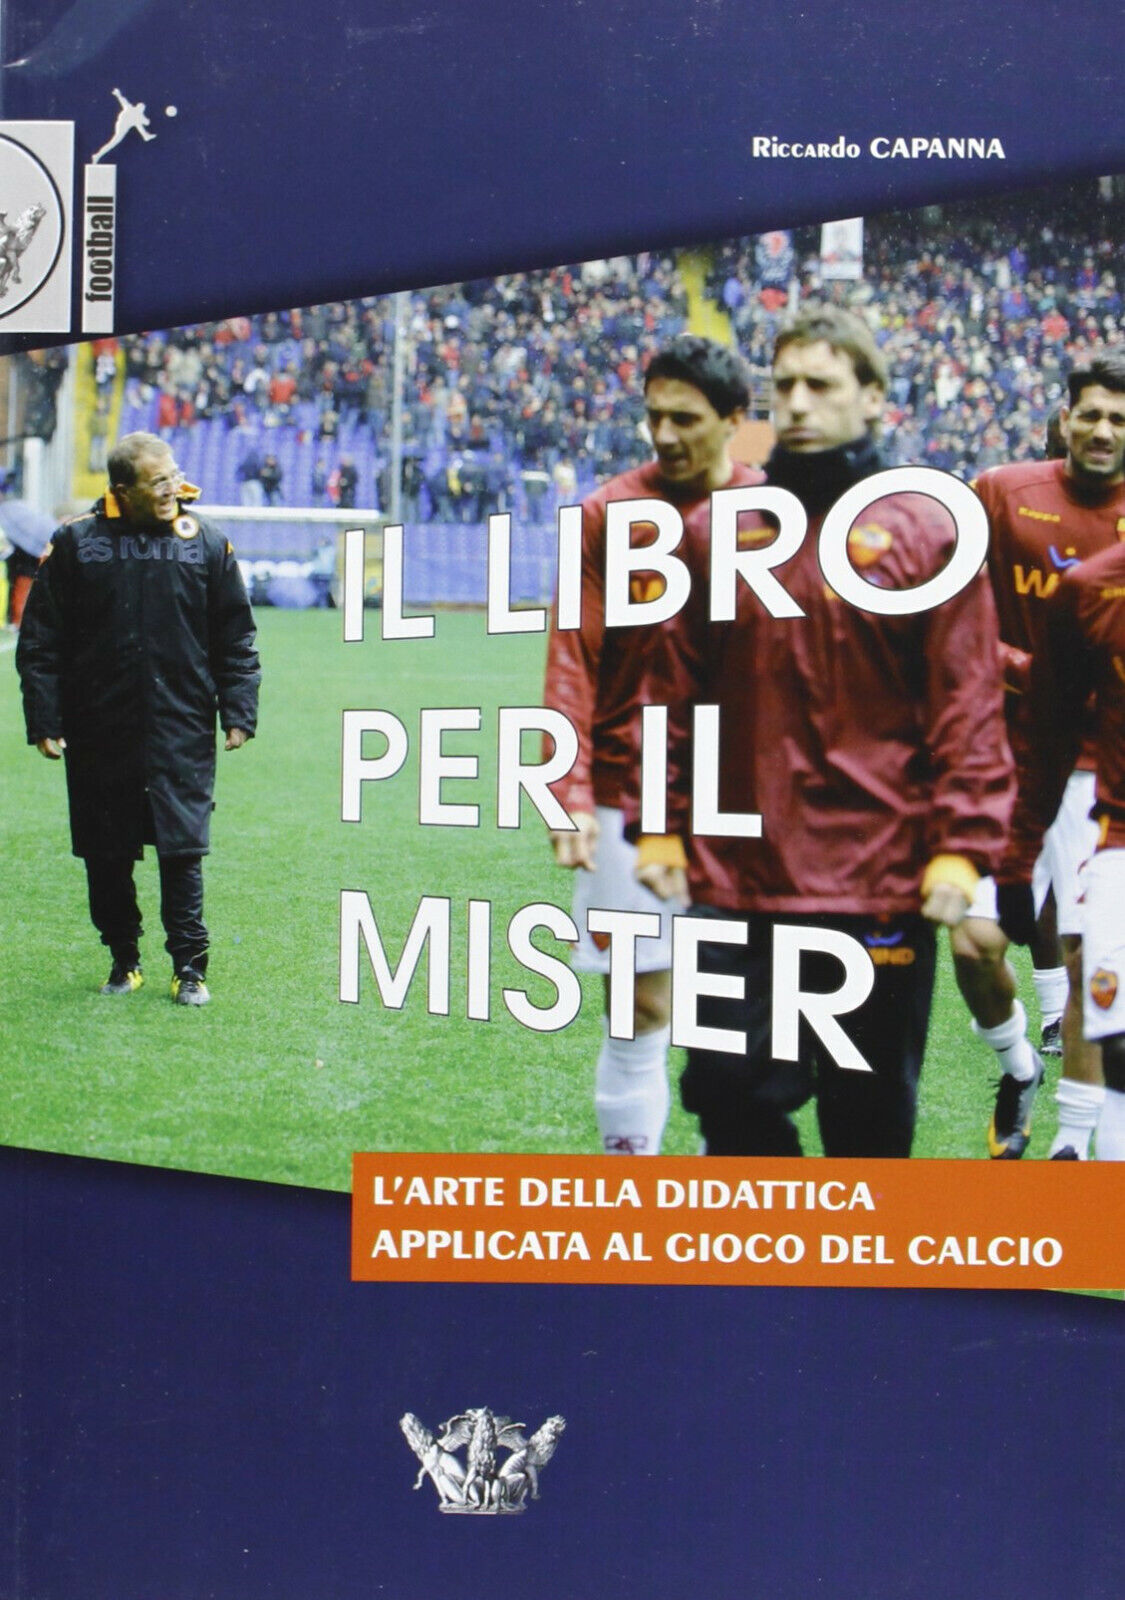 Il libro per il mister - Riccardo Capanna - Calzetti Mariucci, 2013 libro usato